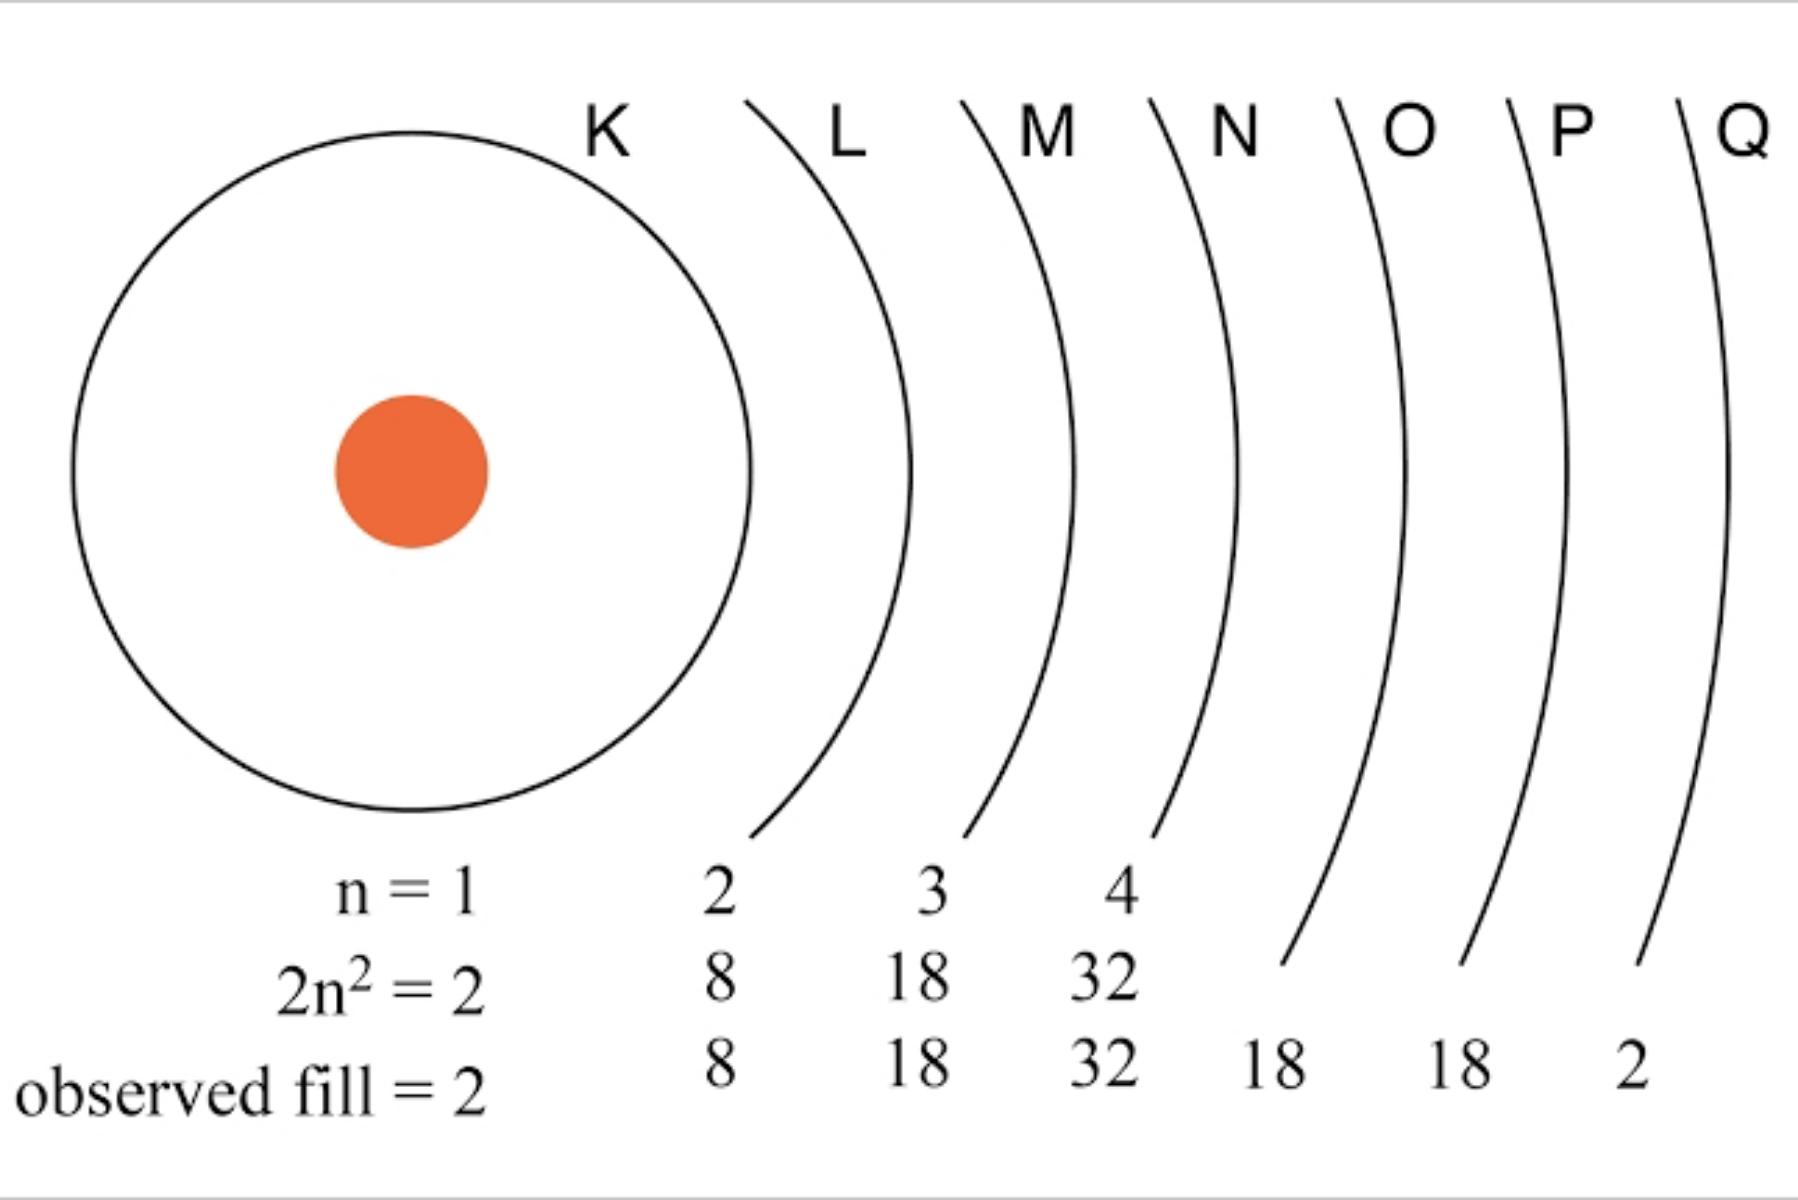 Principal Quantum Numbers (n)